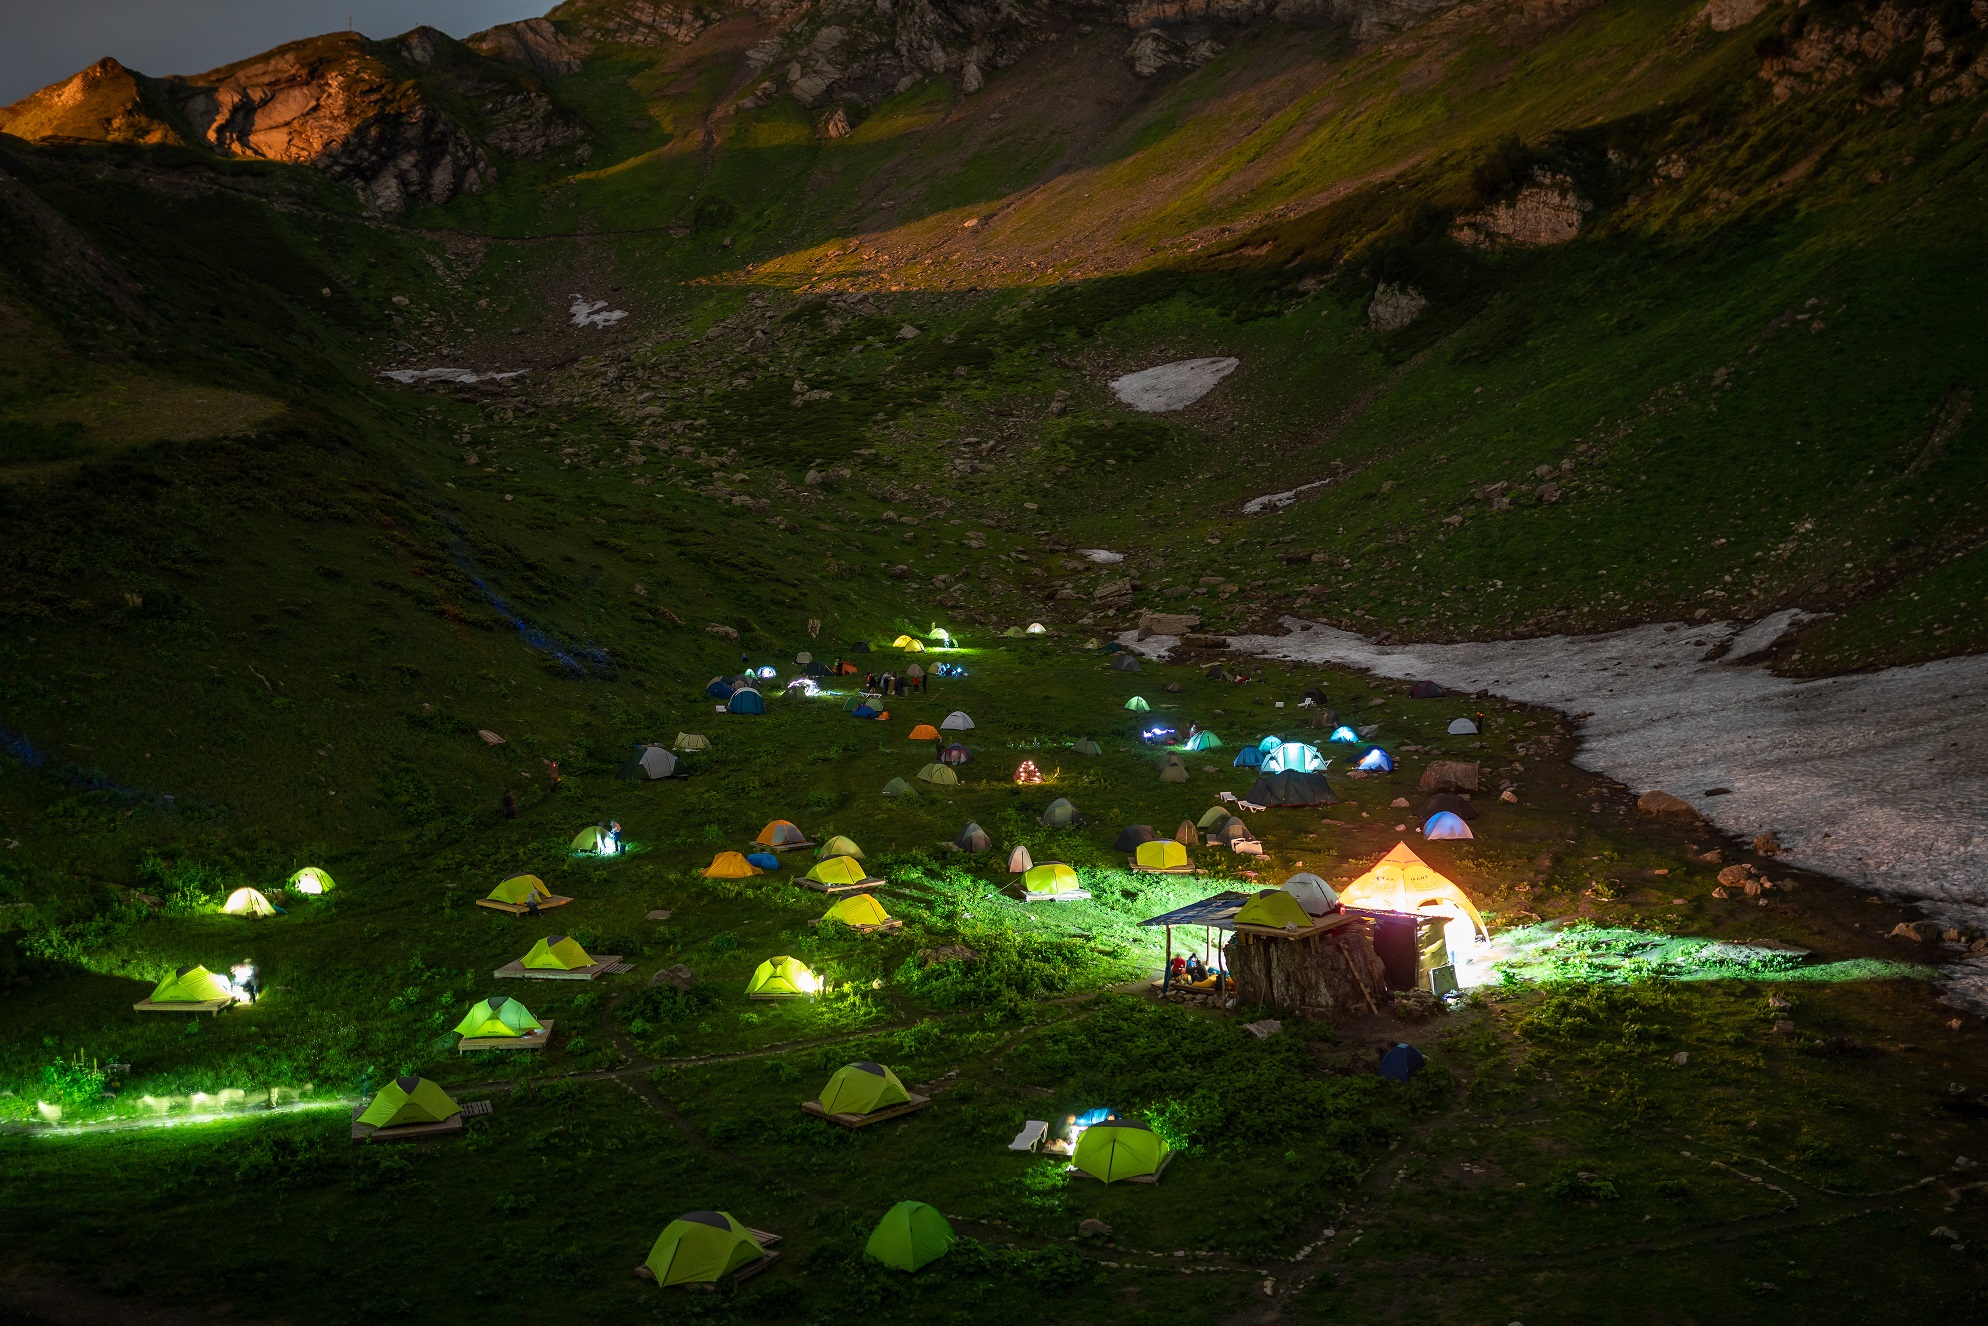 Палаточный лагерь Camp 2050 откроется на Курорте Красная Поляна 24 июля —  Travel Russian News